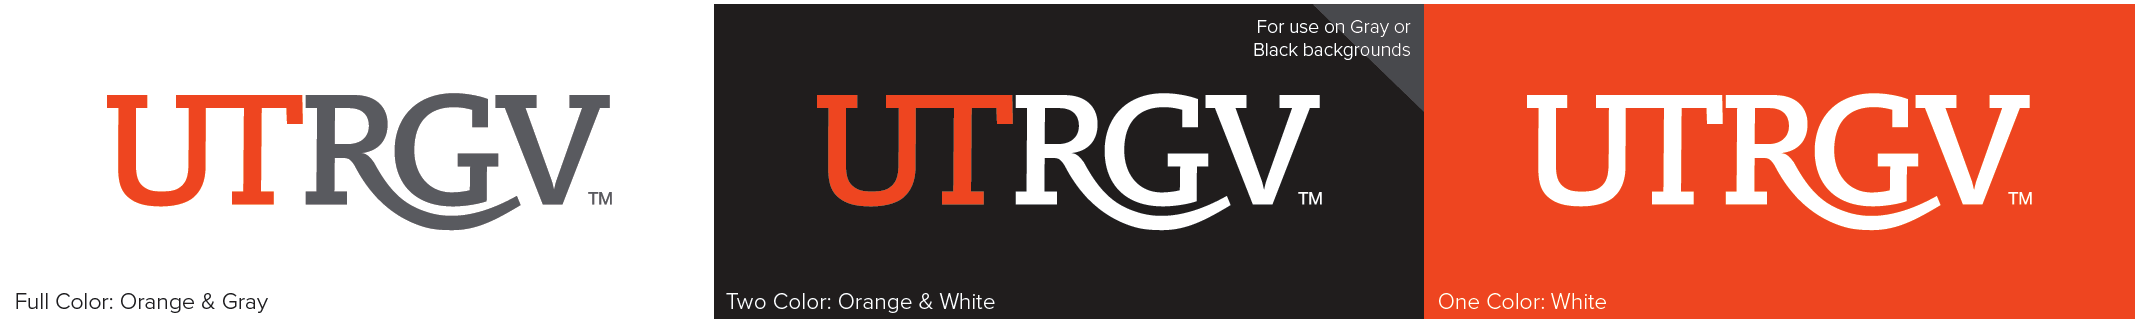 UTRGV Color Logos